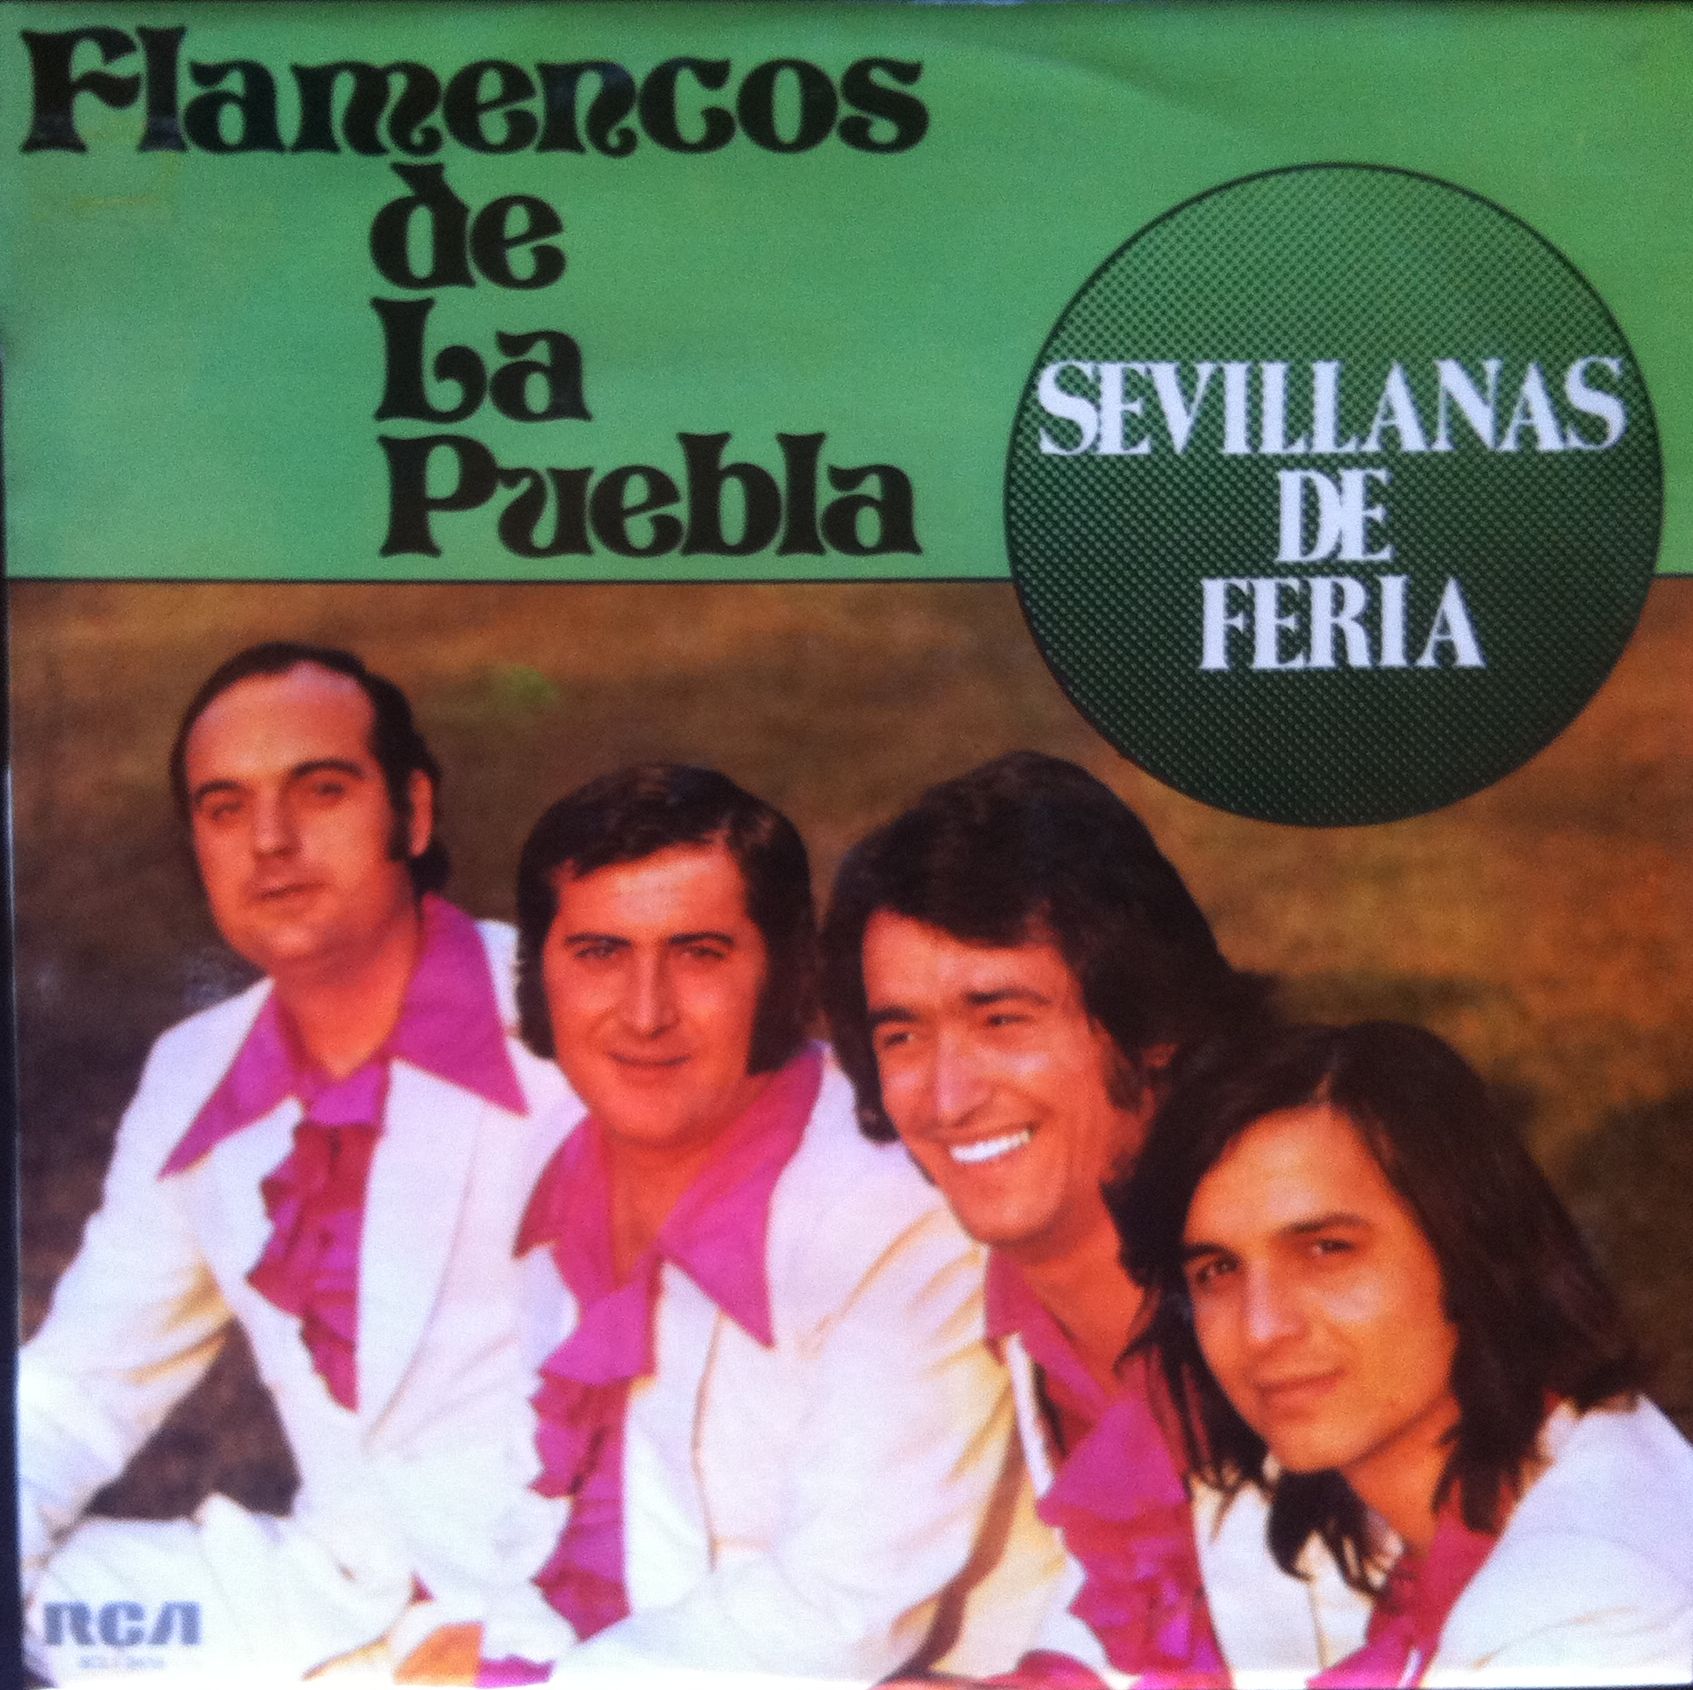 la música es por sevillanas flamencos de la puebla sevillanas de